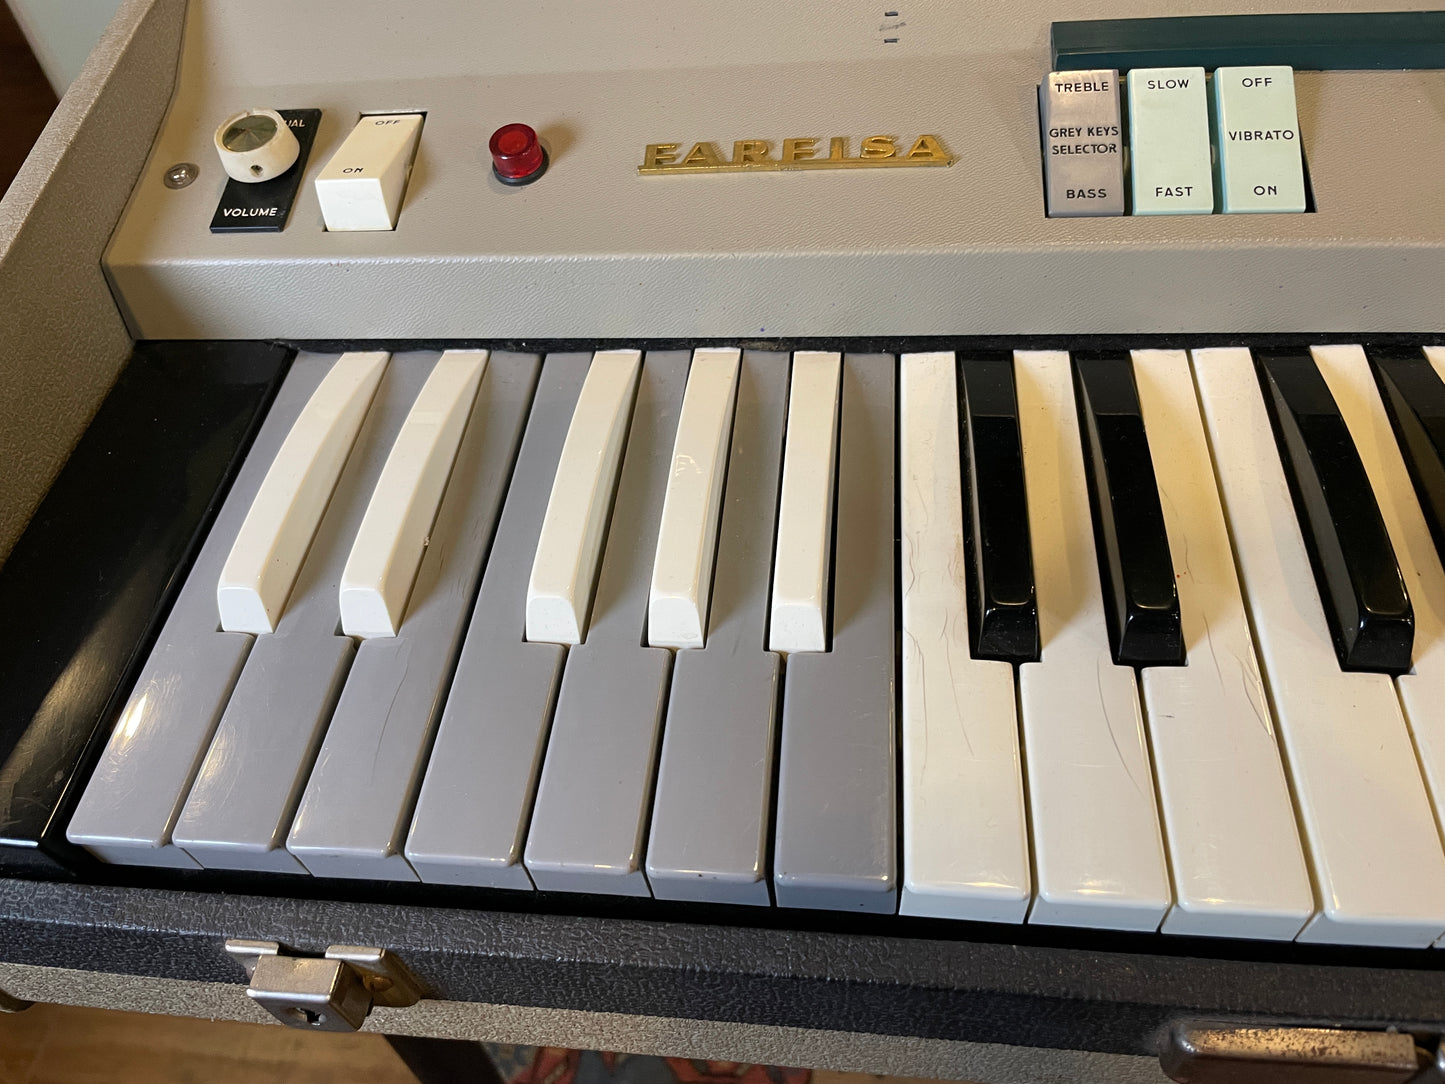 Vintage 1960s Farfisa Mini Compact Electric Organ Keyboard Piano